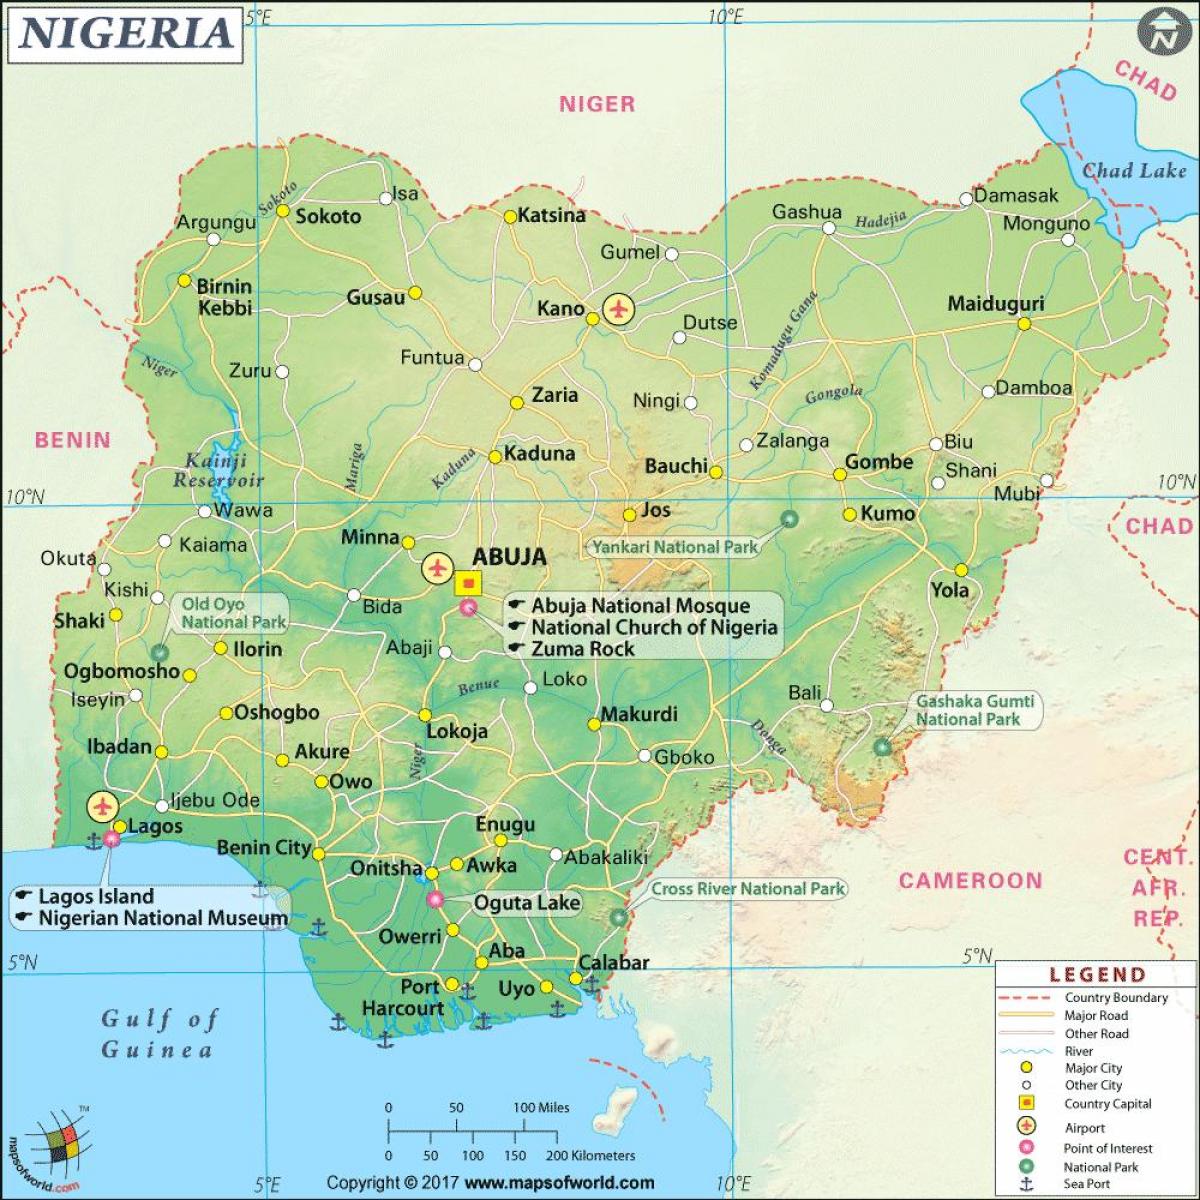 снимки на картата на нигерия